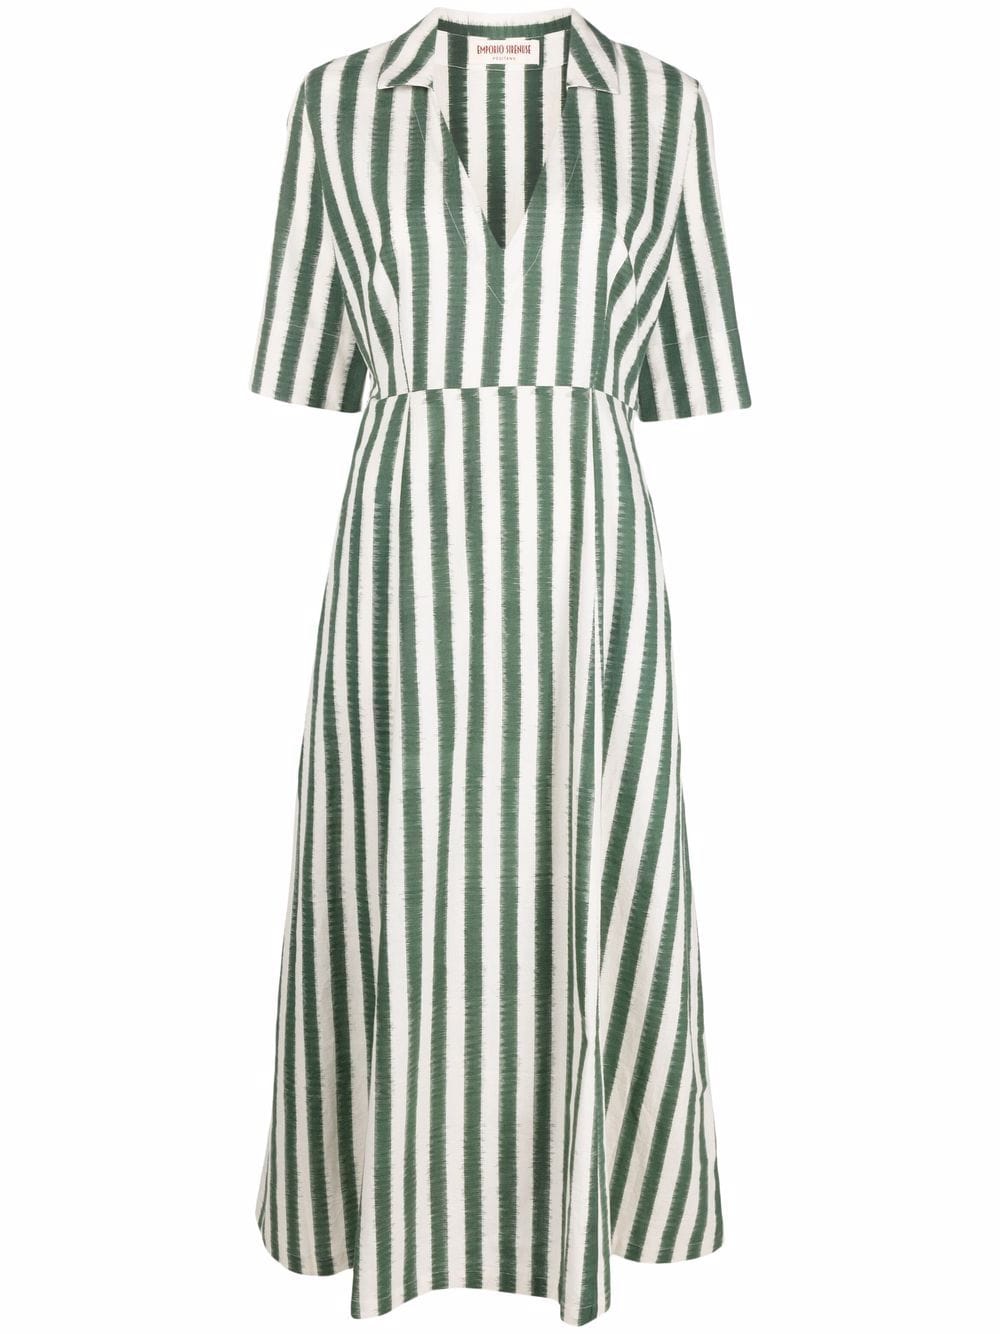 Emporio Sirenuse Ottavia Striped Linen Midi Dress - Farfetch